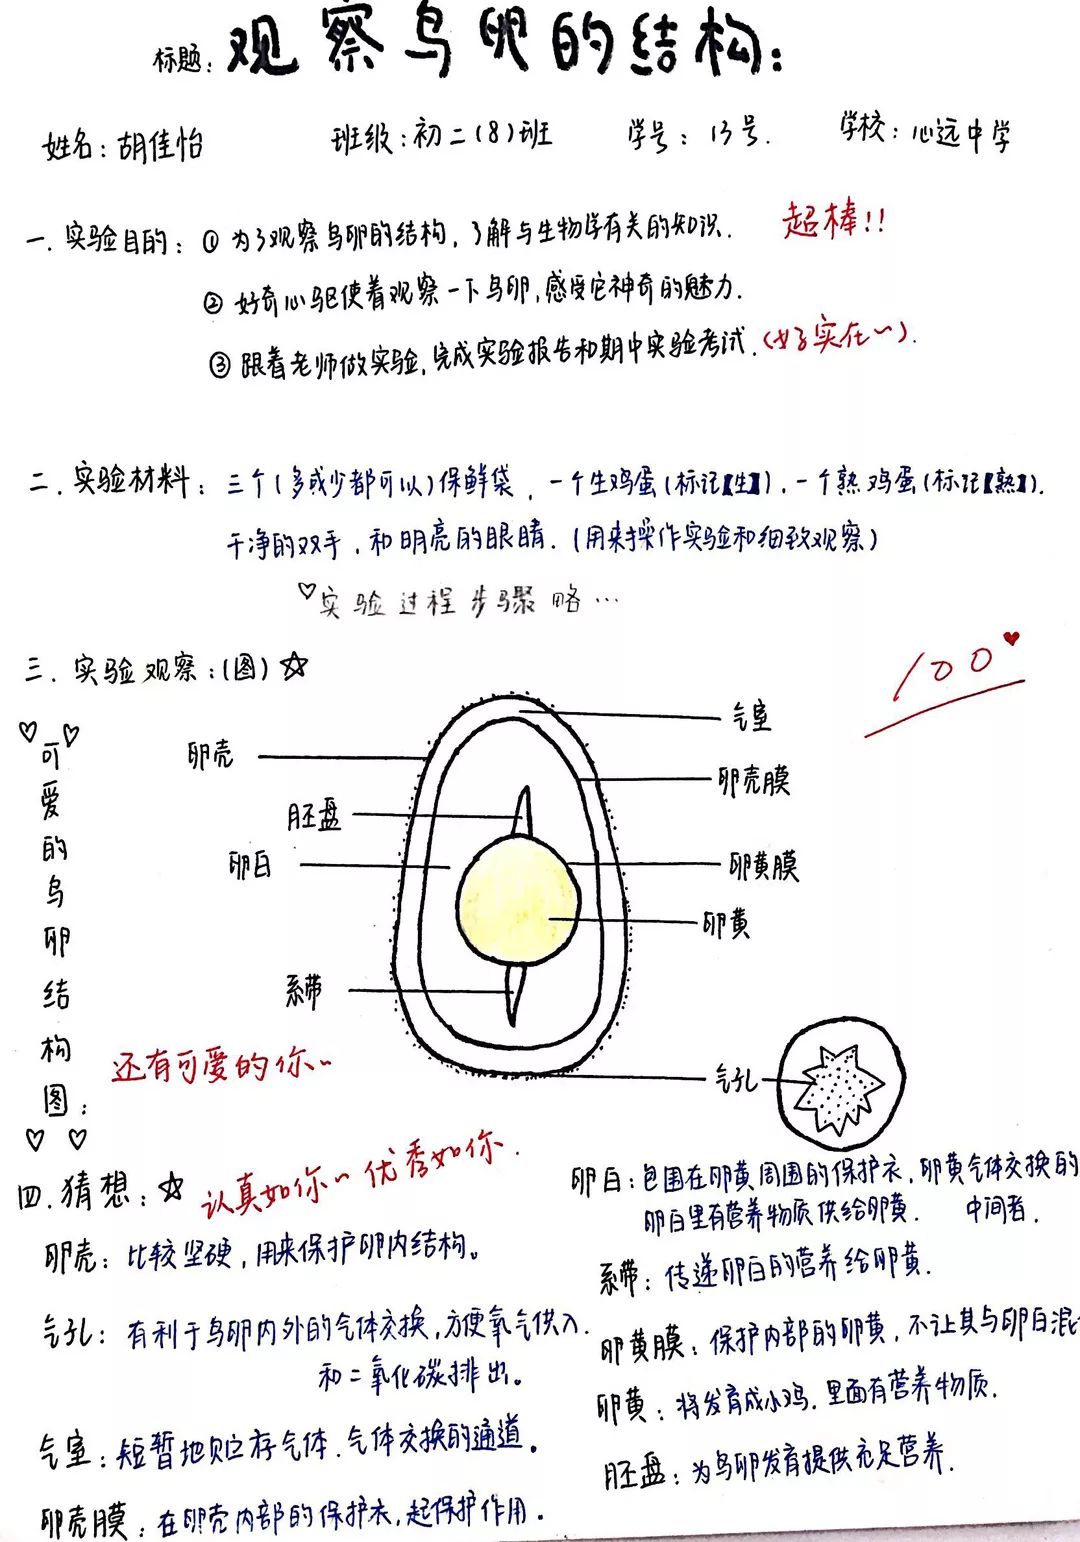 鸡蛋内部结构模型图片